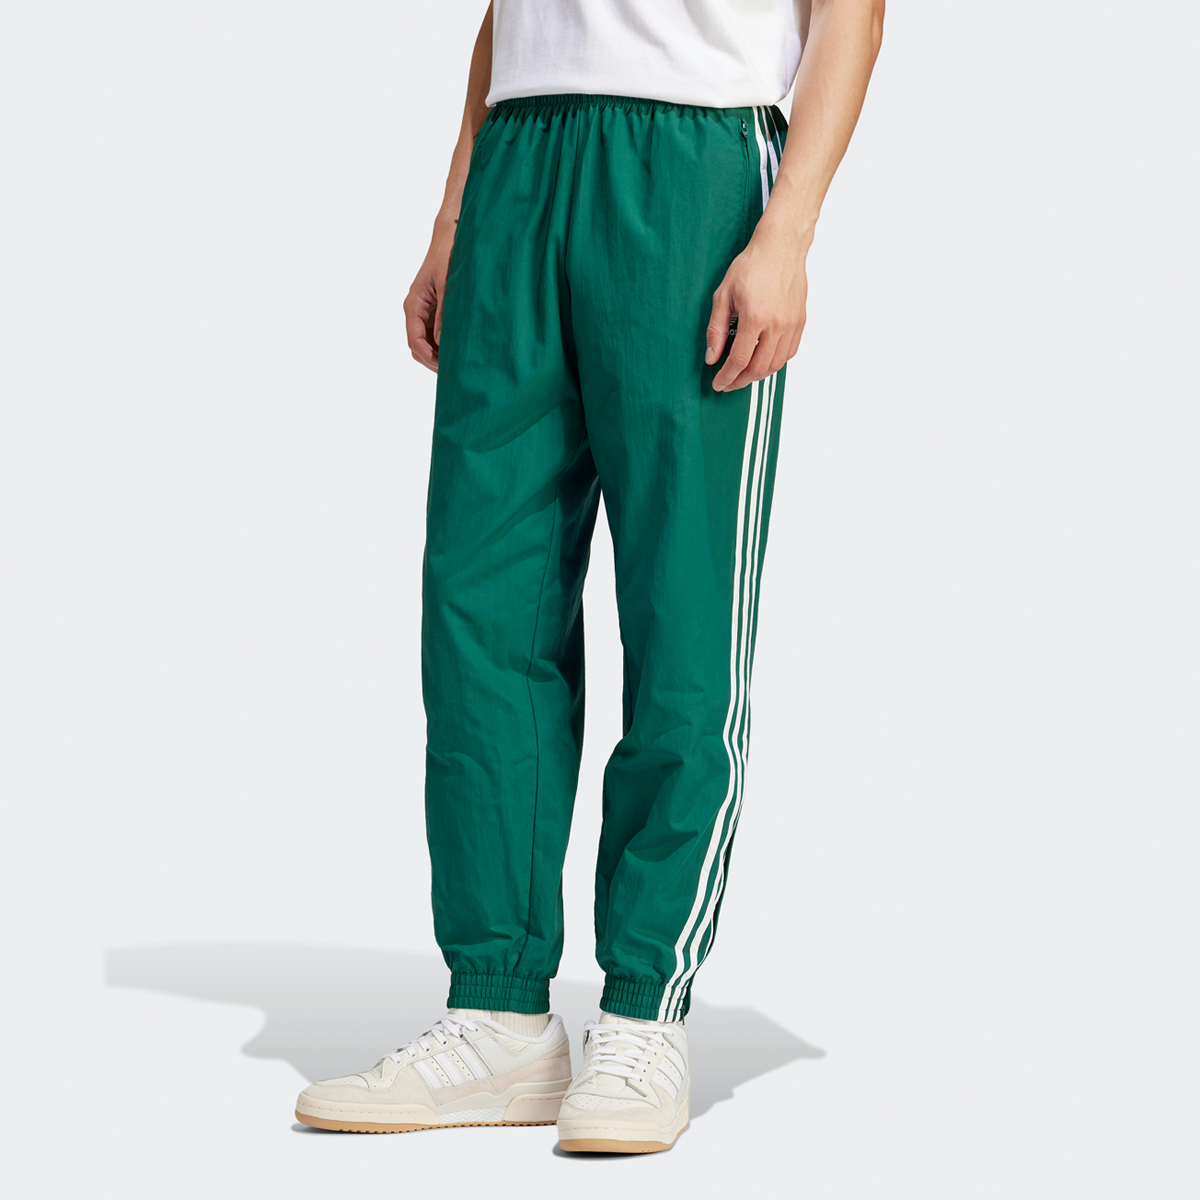 Adidas Originals 3-stripes Woven Firebird Jogging Broek Trainingsbroeken Heren collegiate green maat: XL beschikbare maaten:L XL